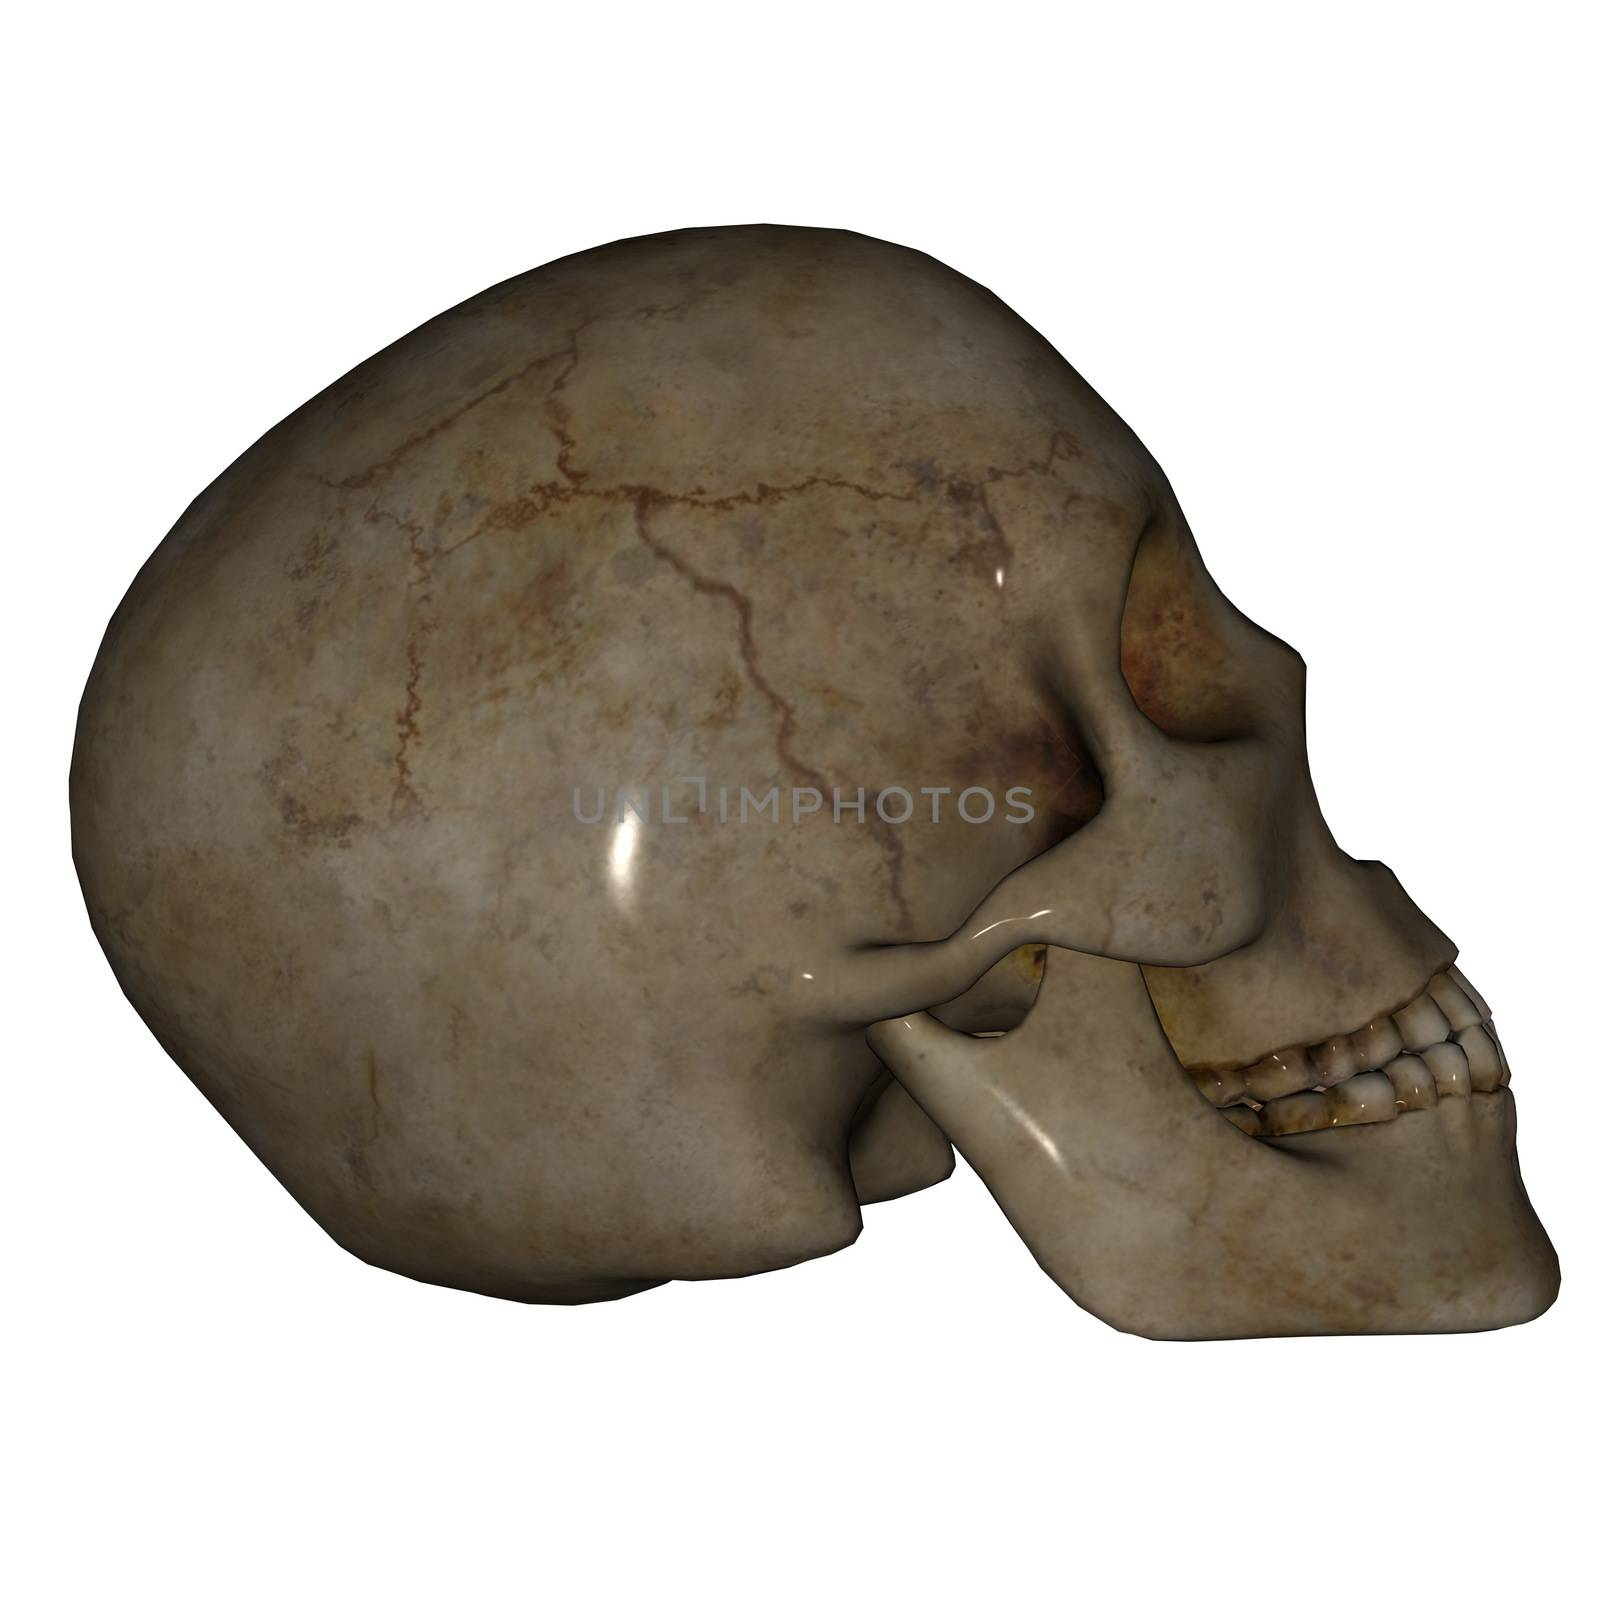 Skull face - 3D render by Elenaphotos21